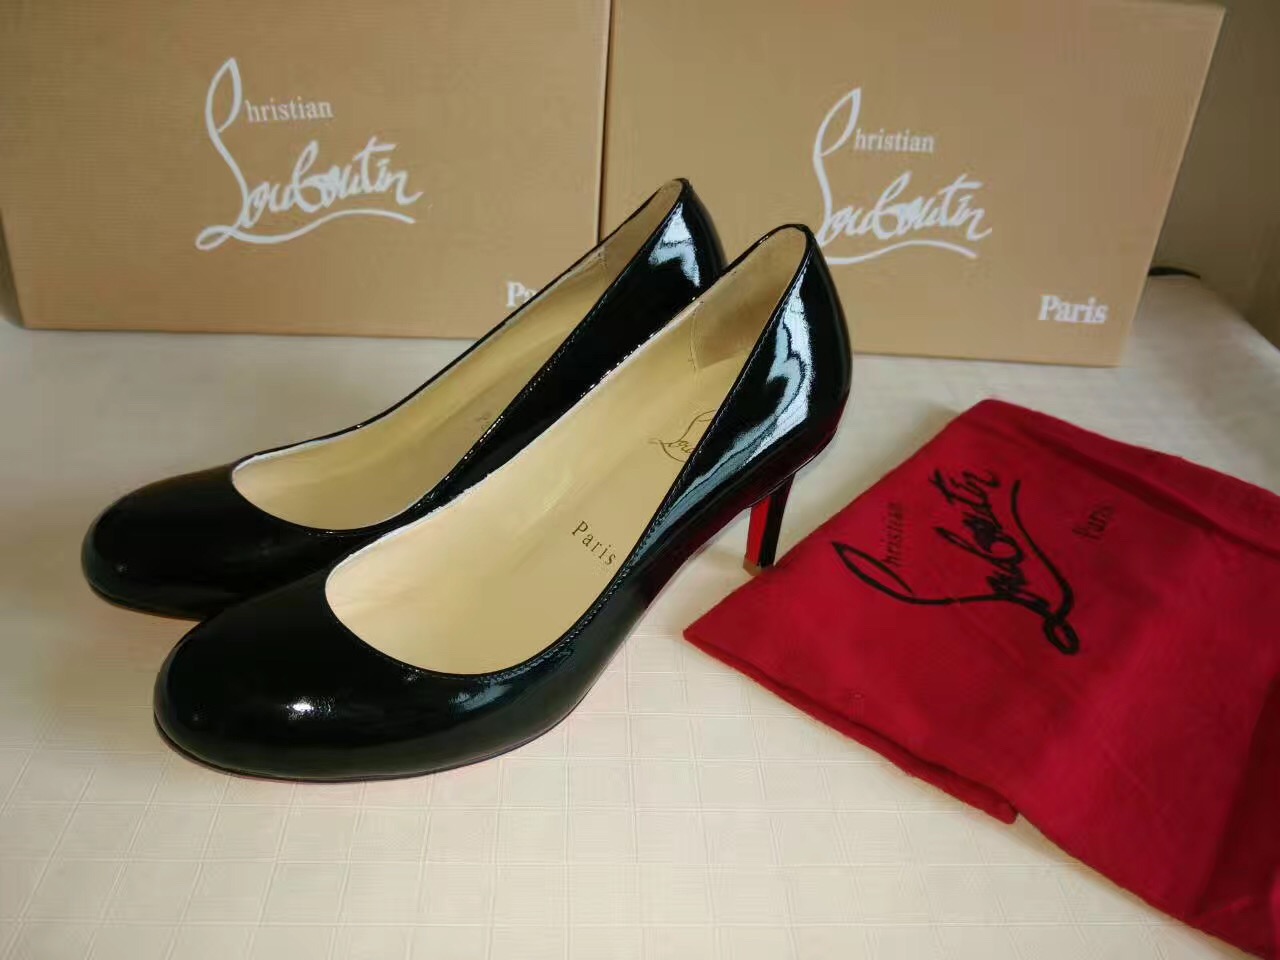 Christian Louboutin CL sandals 7cm heels black shoes